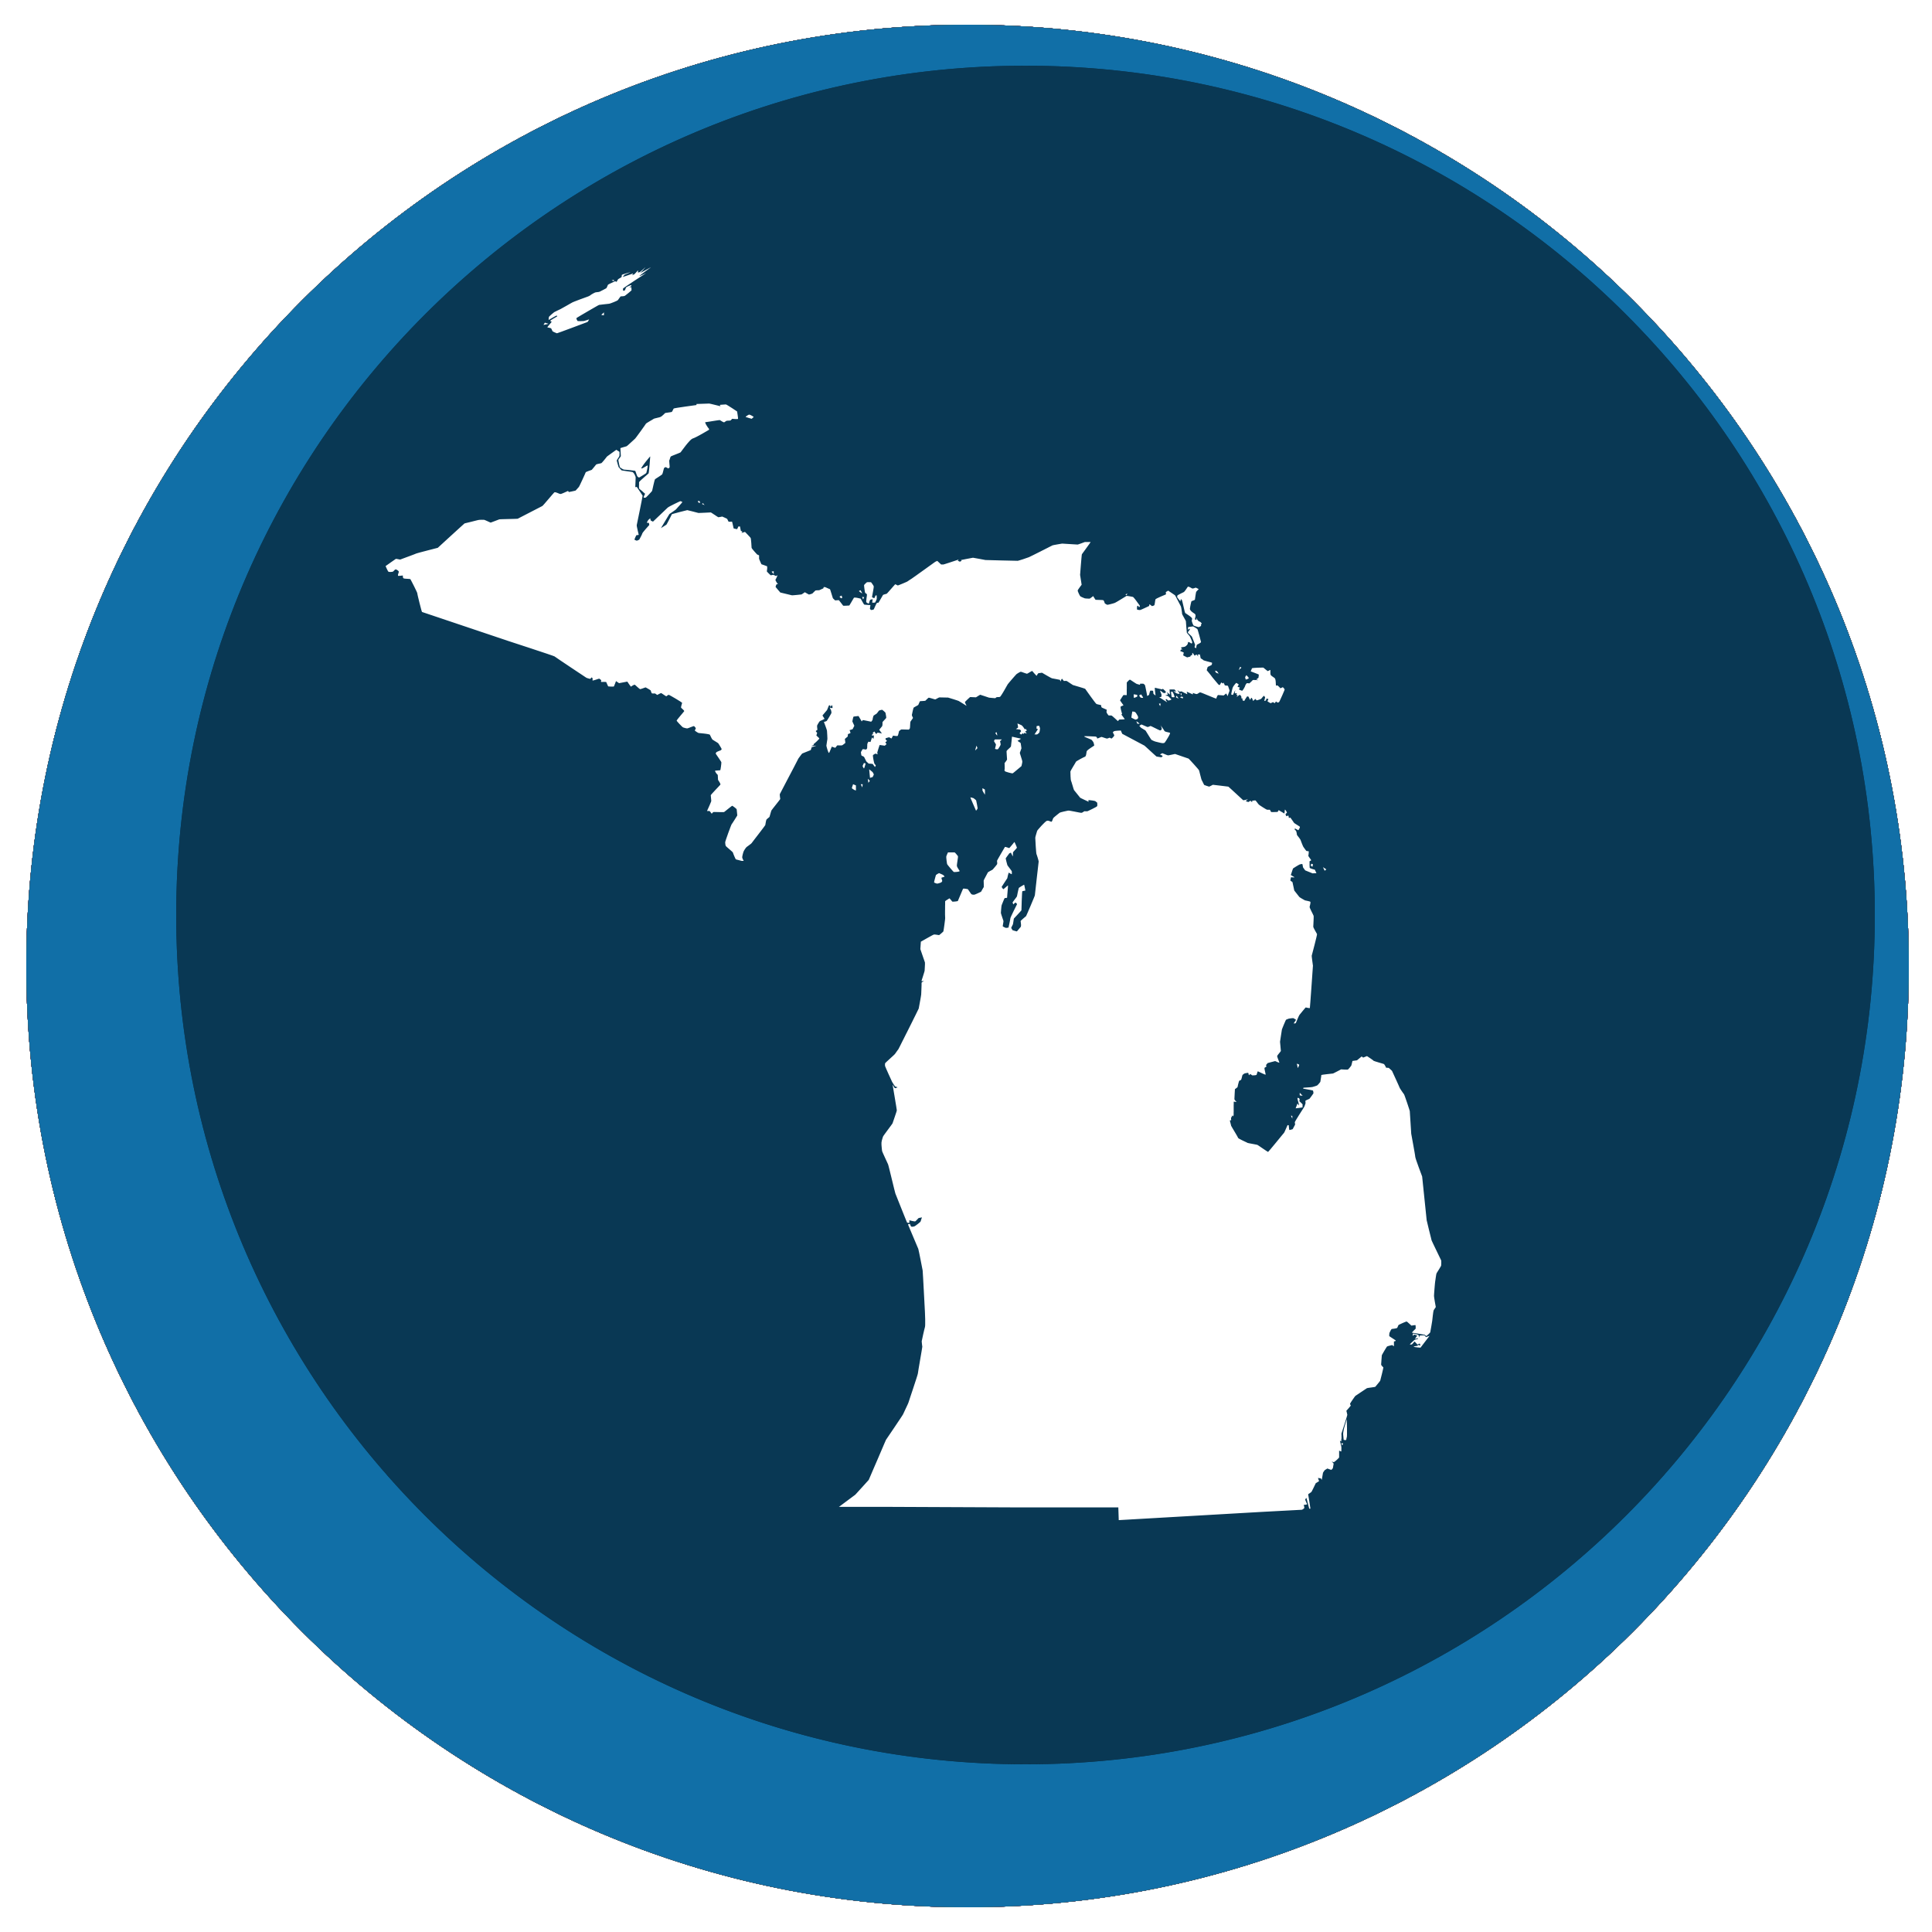 Michigan state shape in a circle